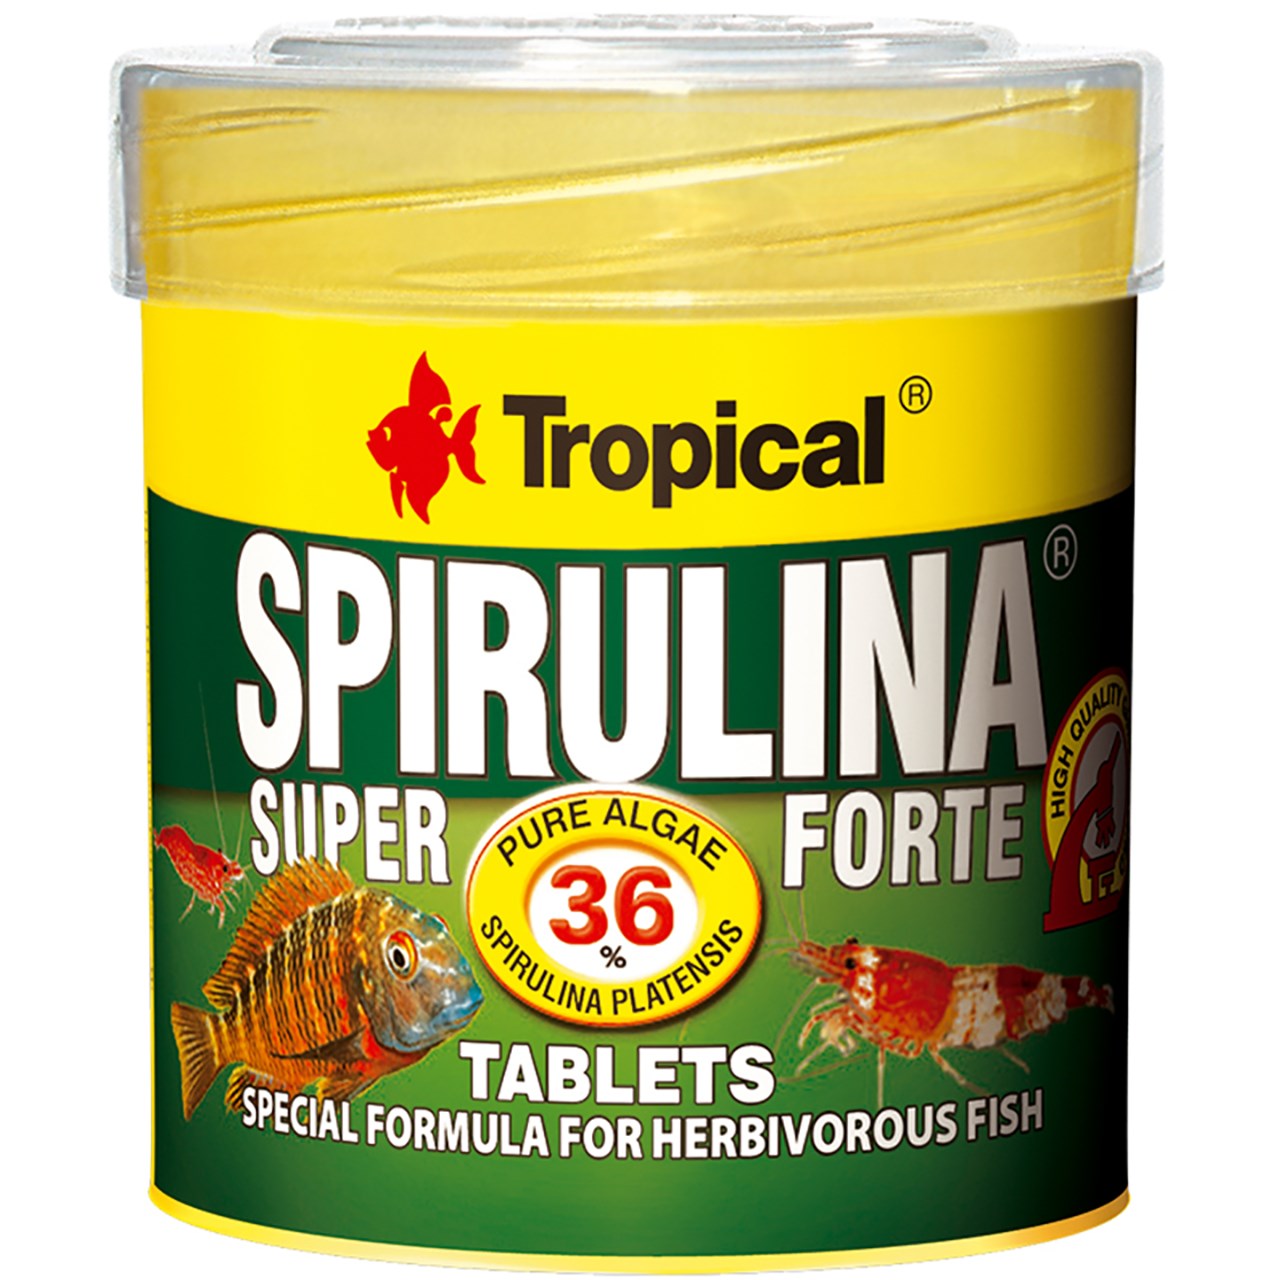 غذای ماهی تروپیکال مدل Super Spirulina Forte Tabletes وزن 36 گرم